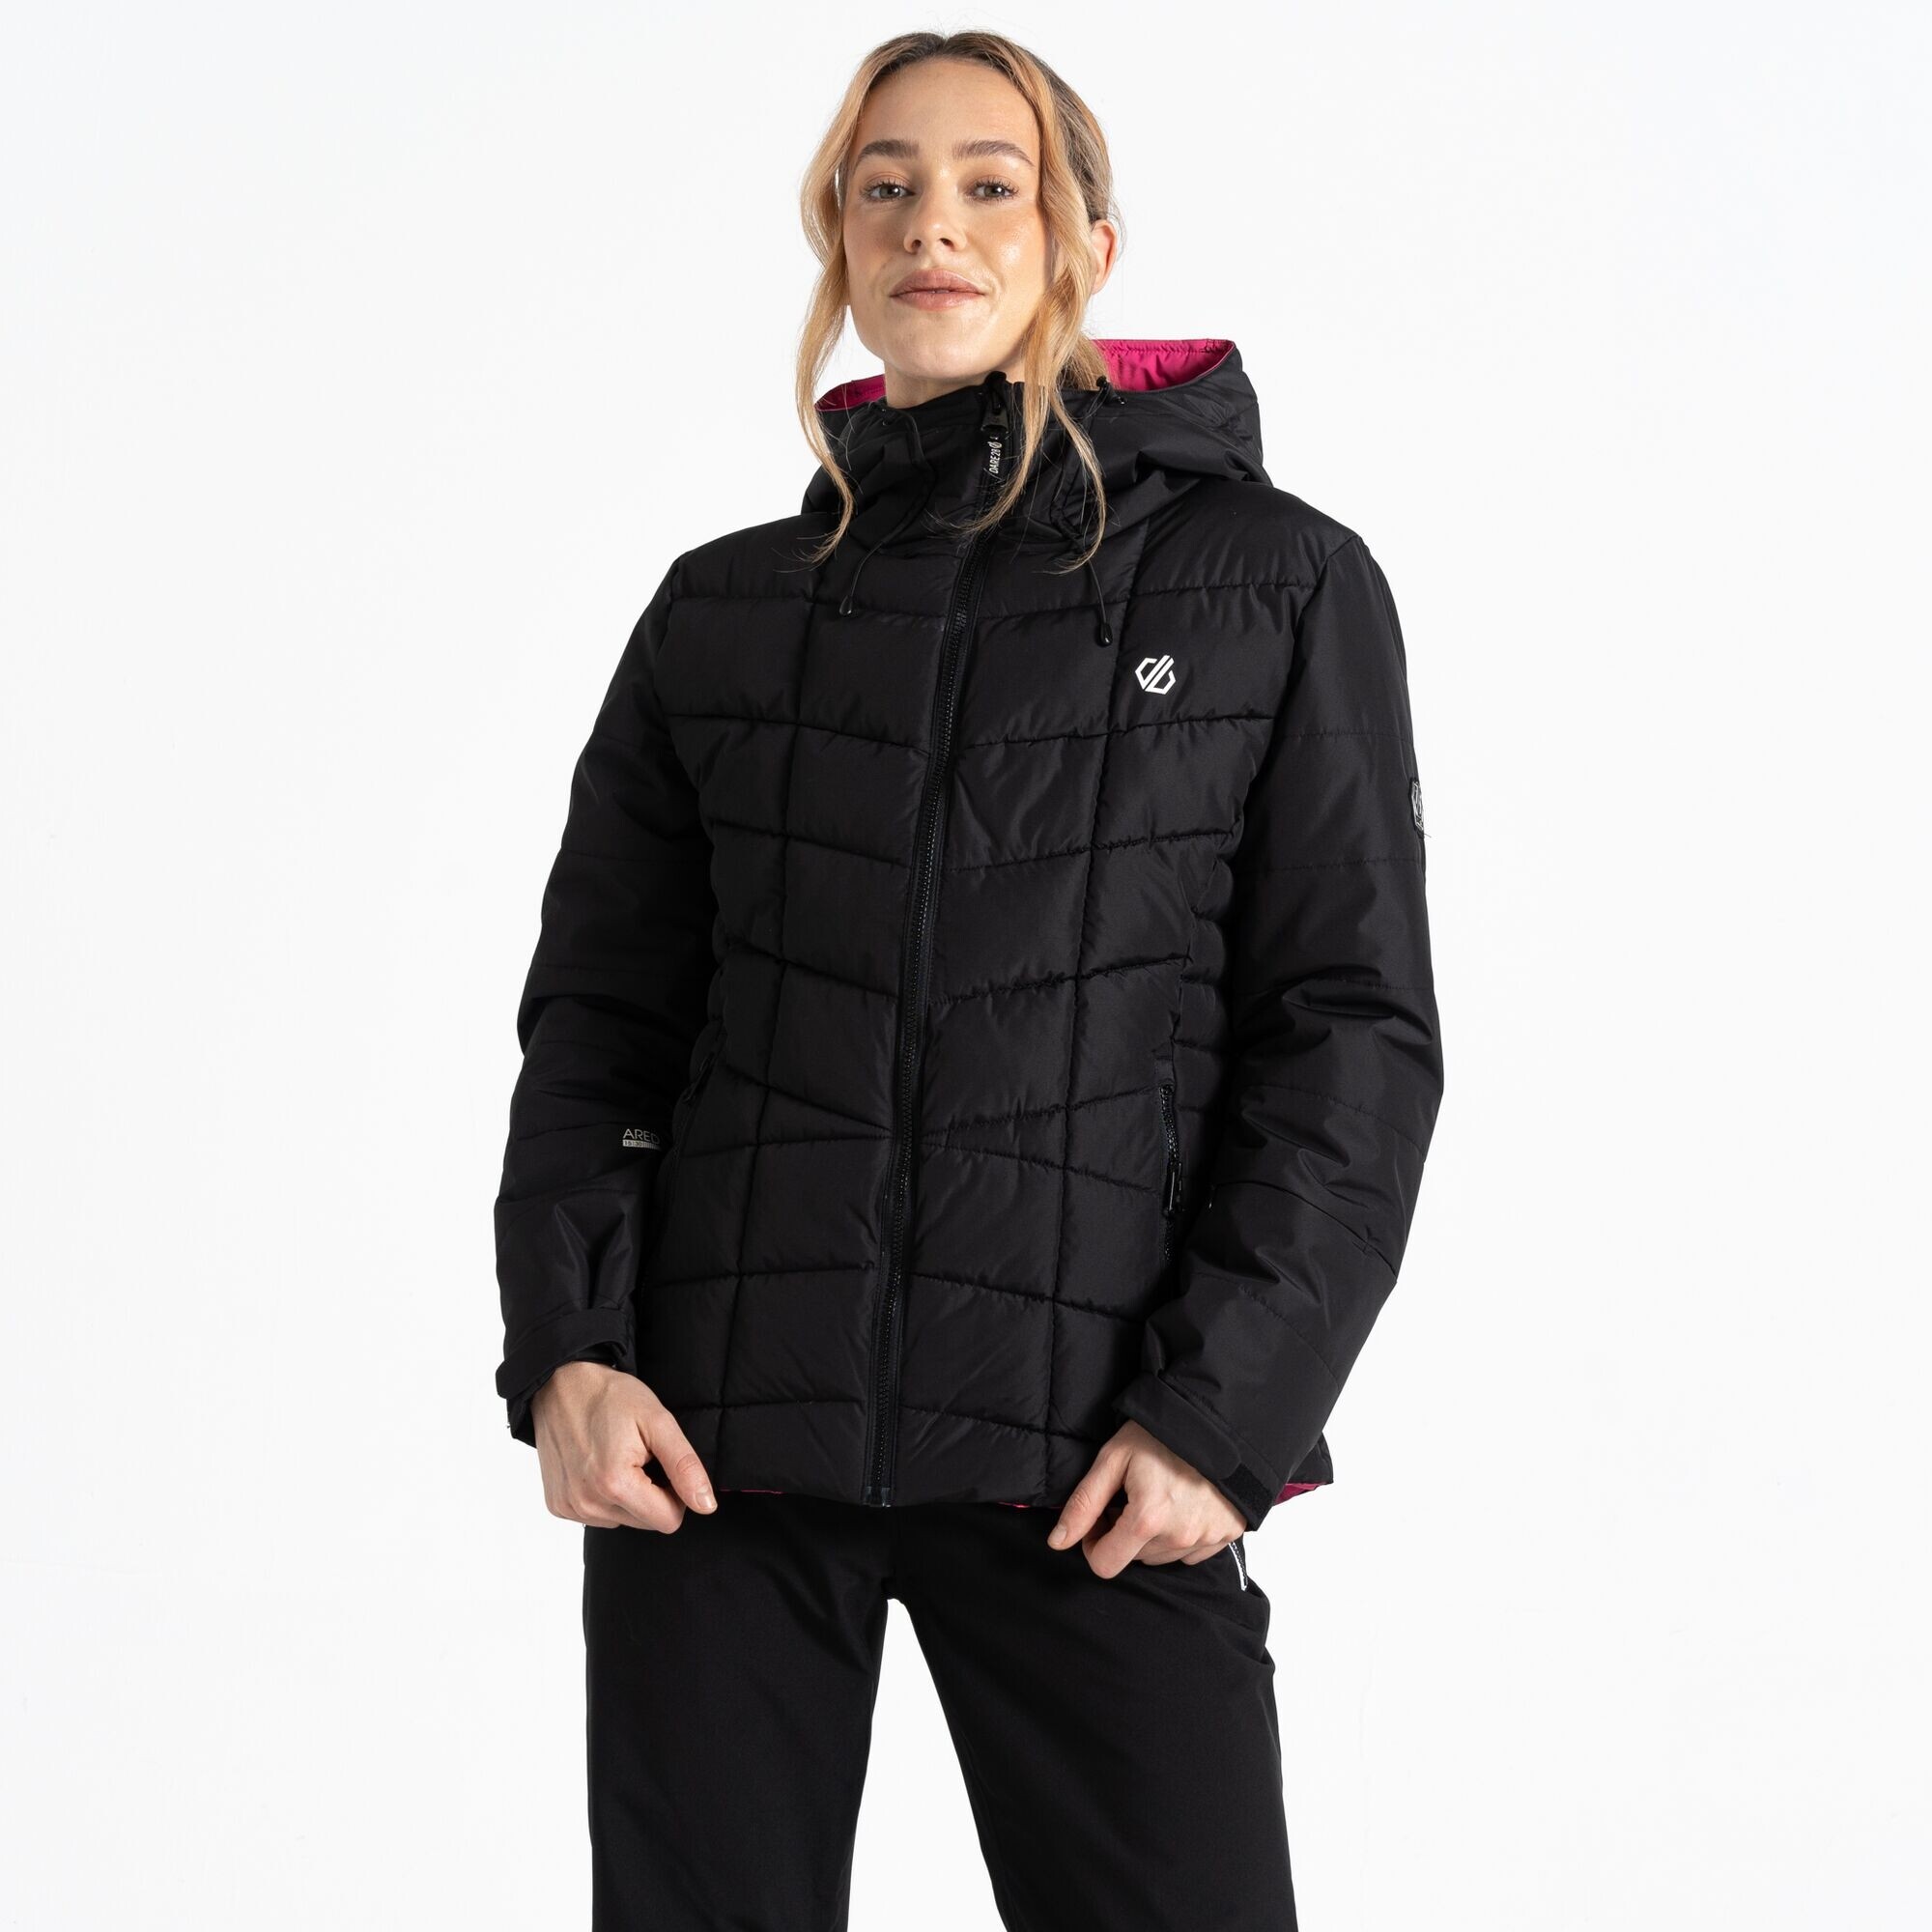 Dámská lyžařská bunda Blindside Jacket DWP569-800 černá - Dare2B 42